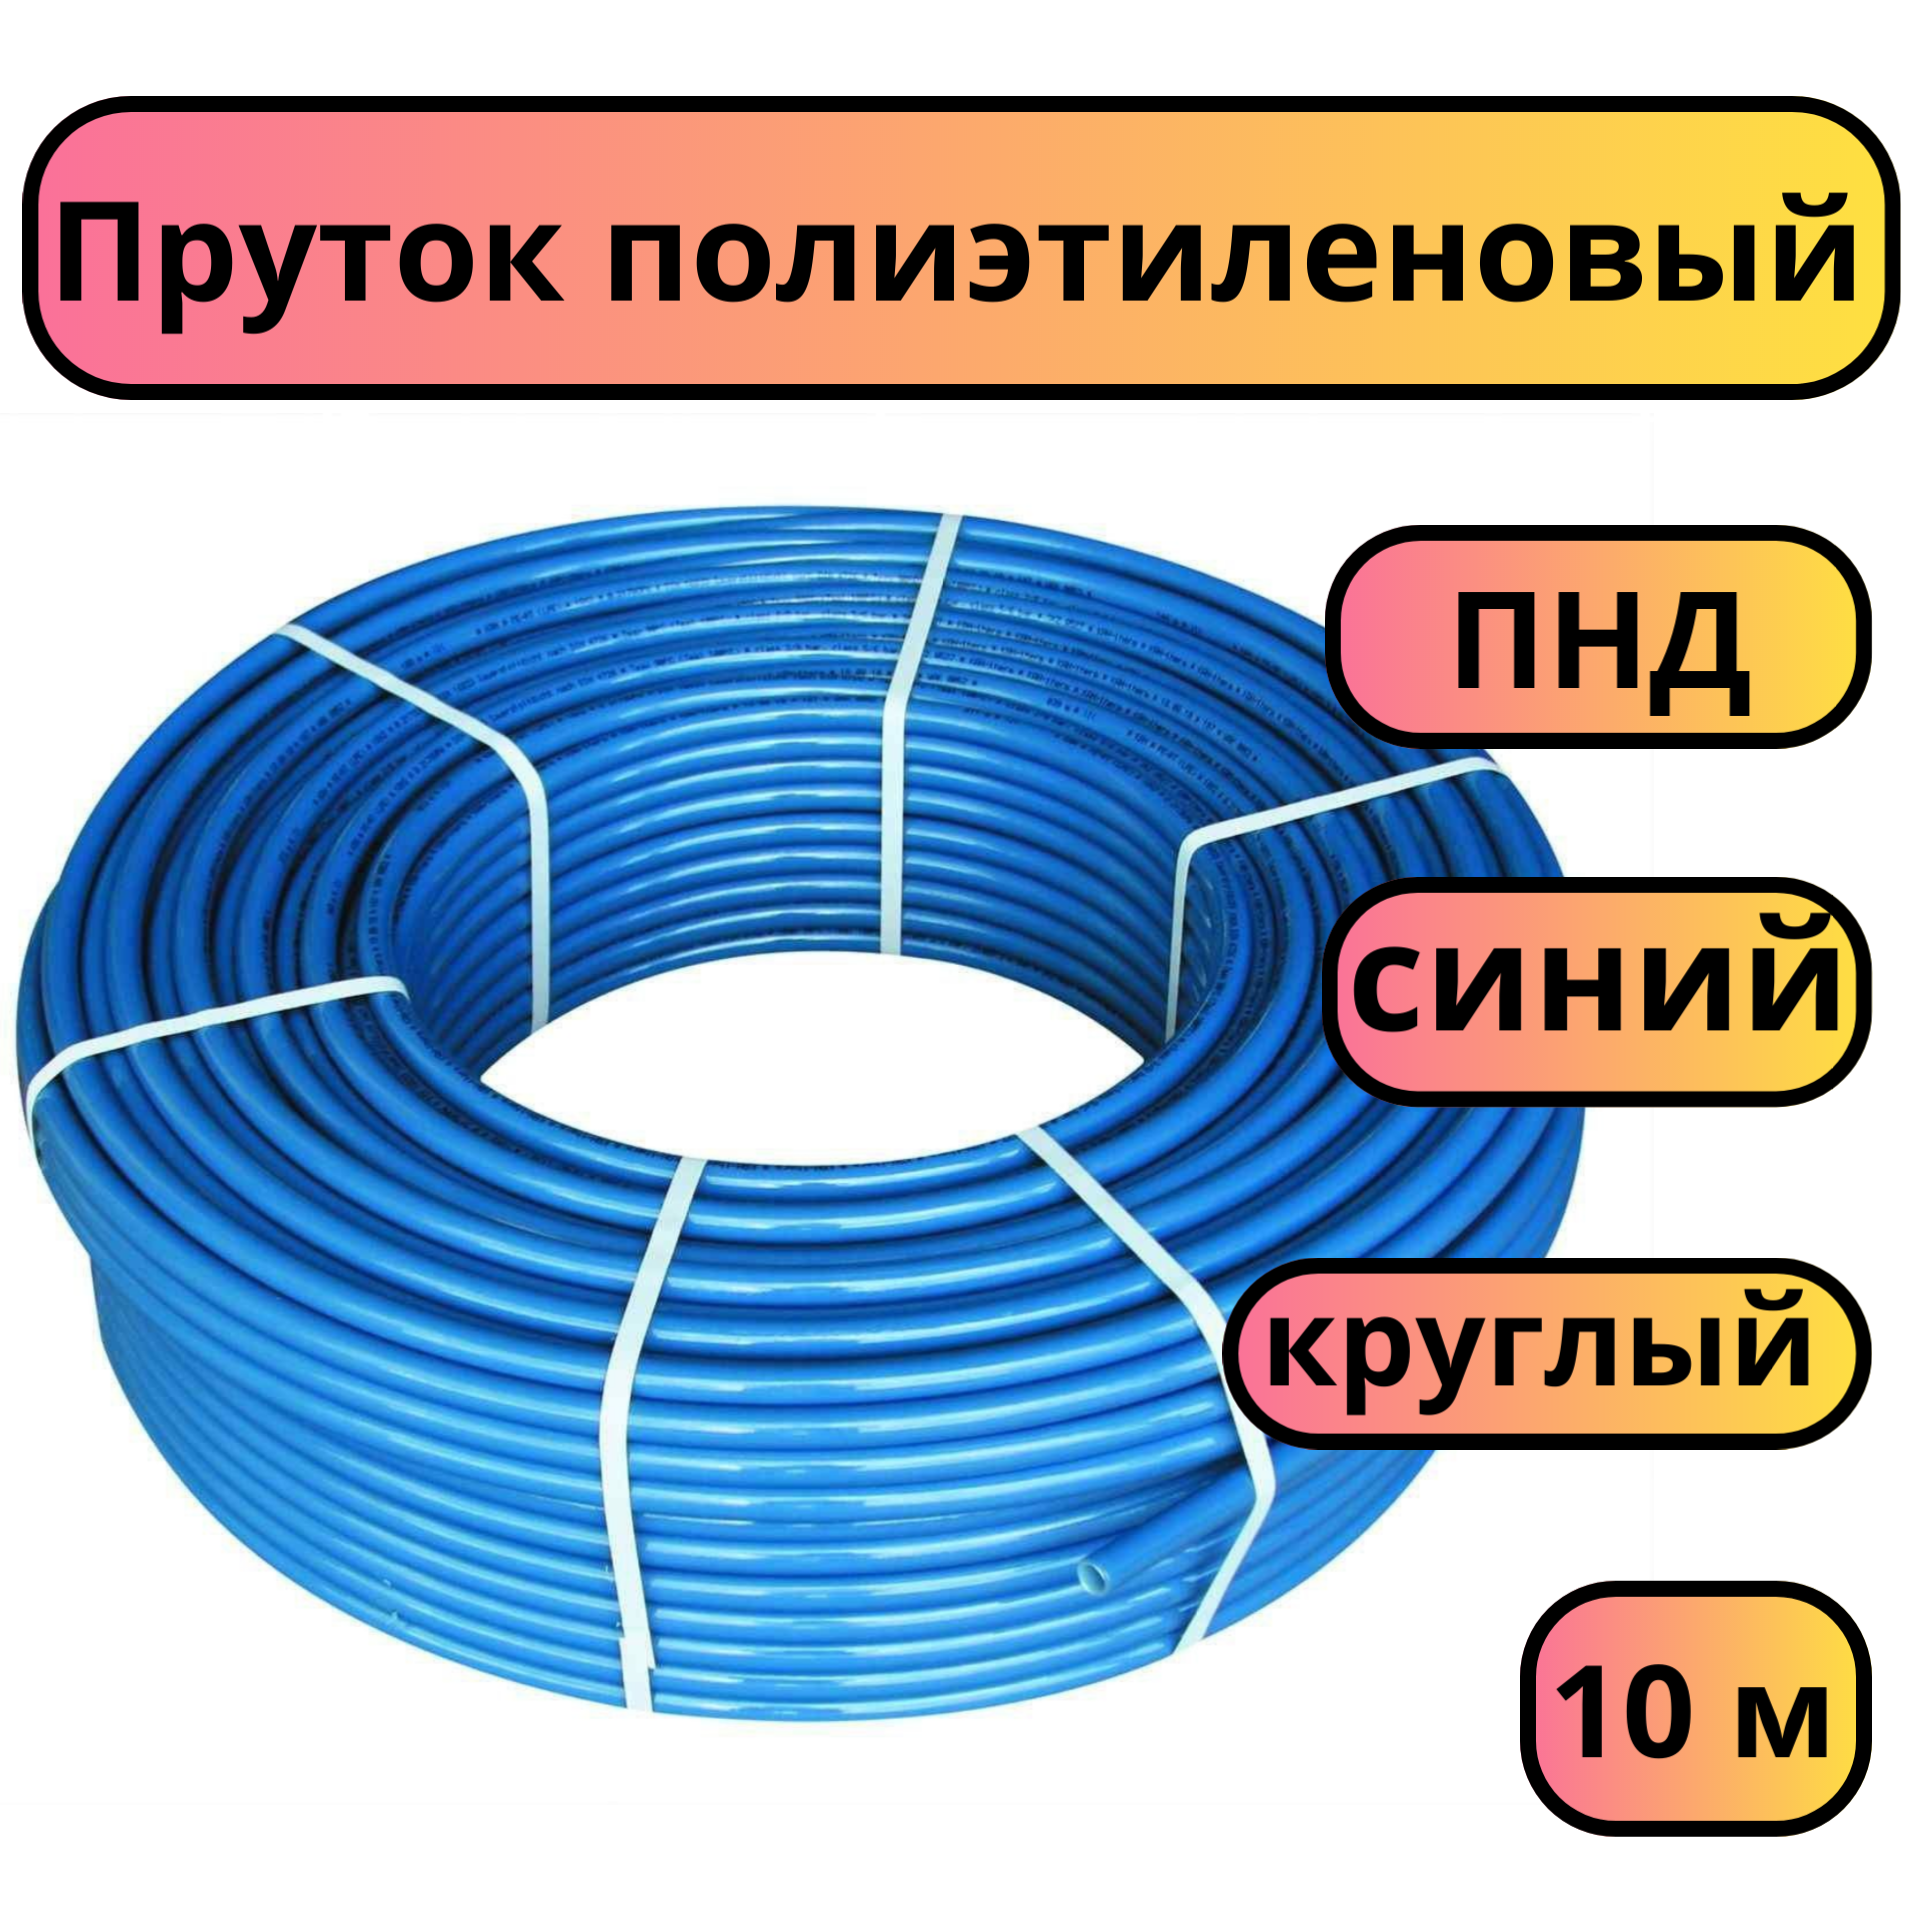 Пруток присадочный для сварки ПНД диаметр 4 мм длина 10 м синий круглый